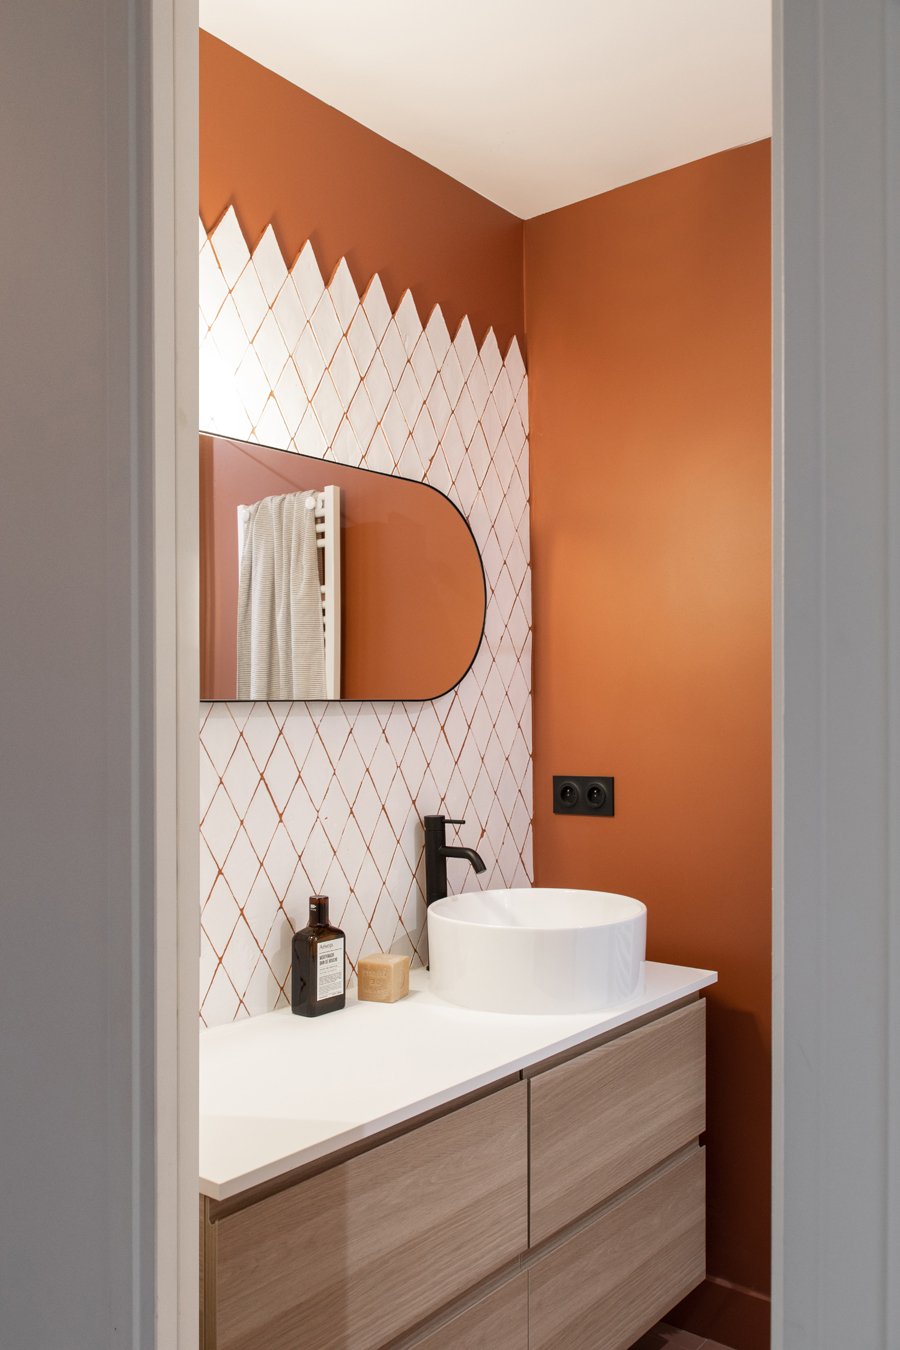 salle de bain mur orange carrelage blanc mobilier bois gris